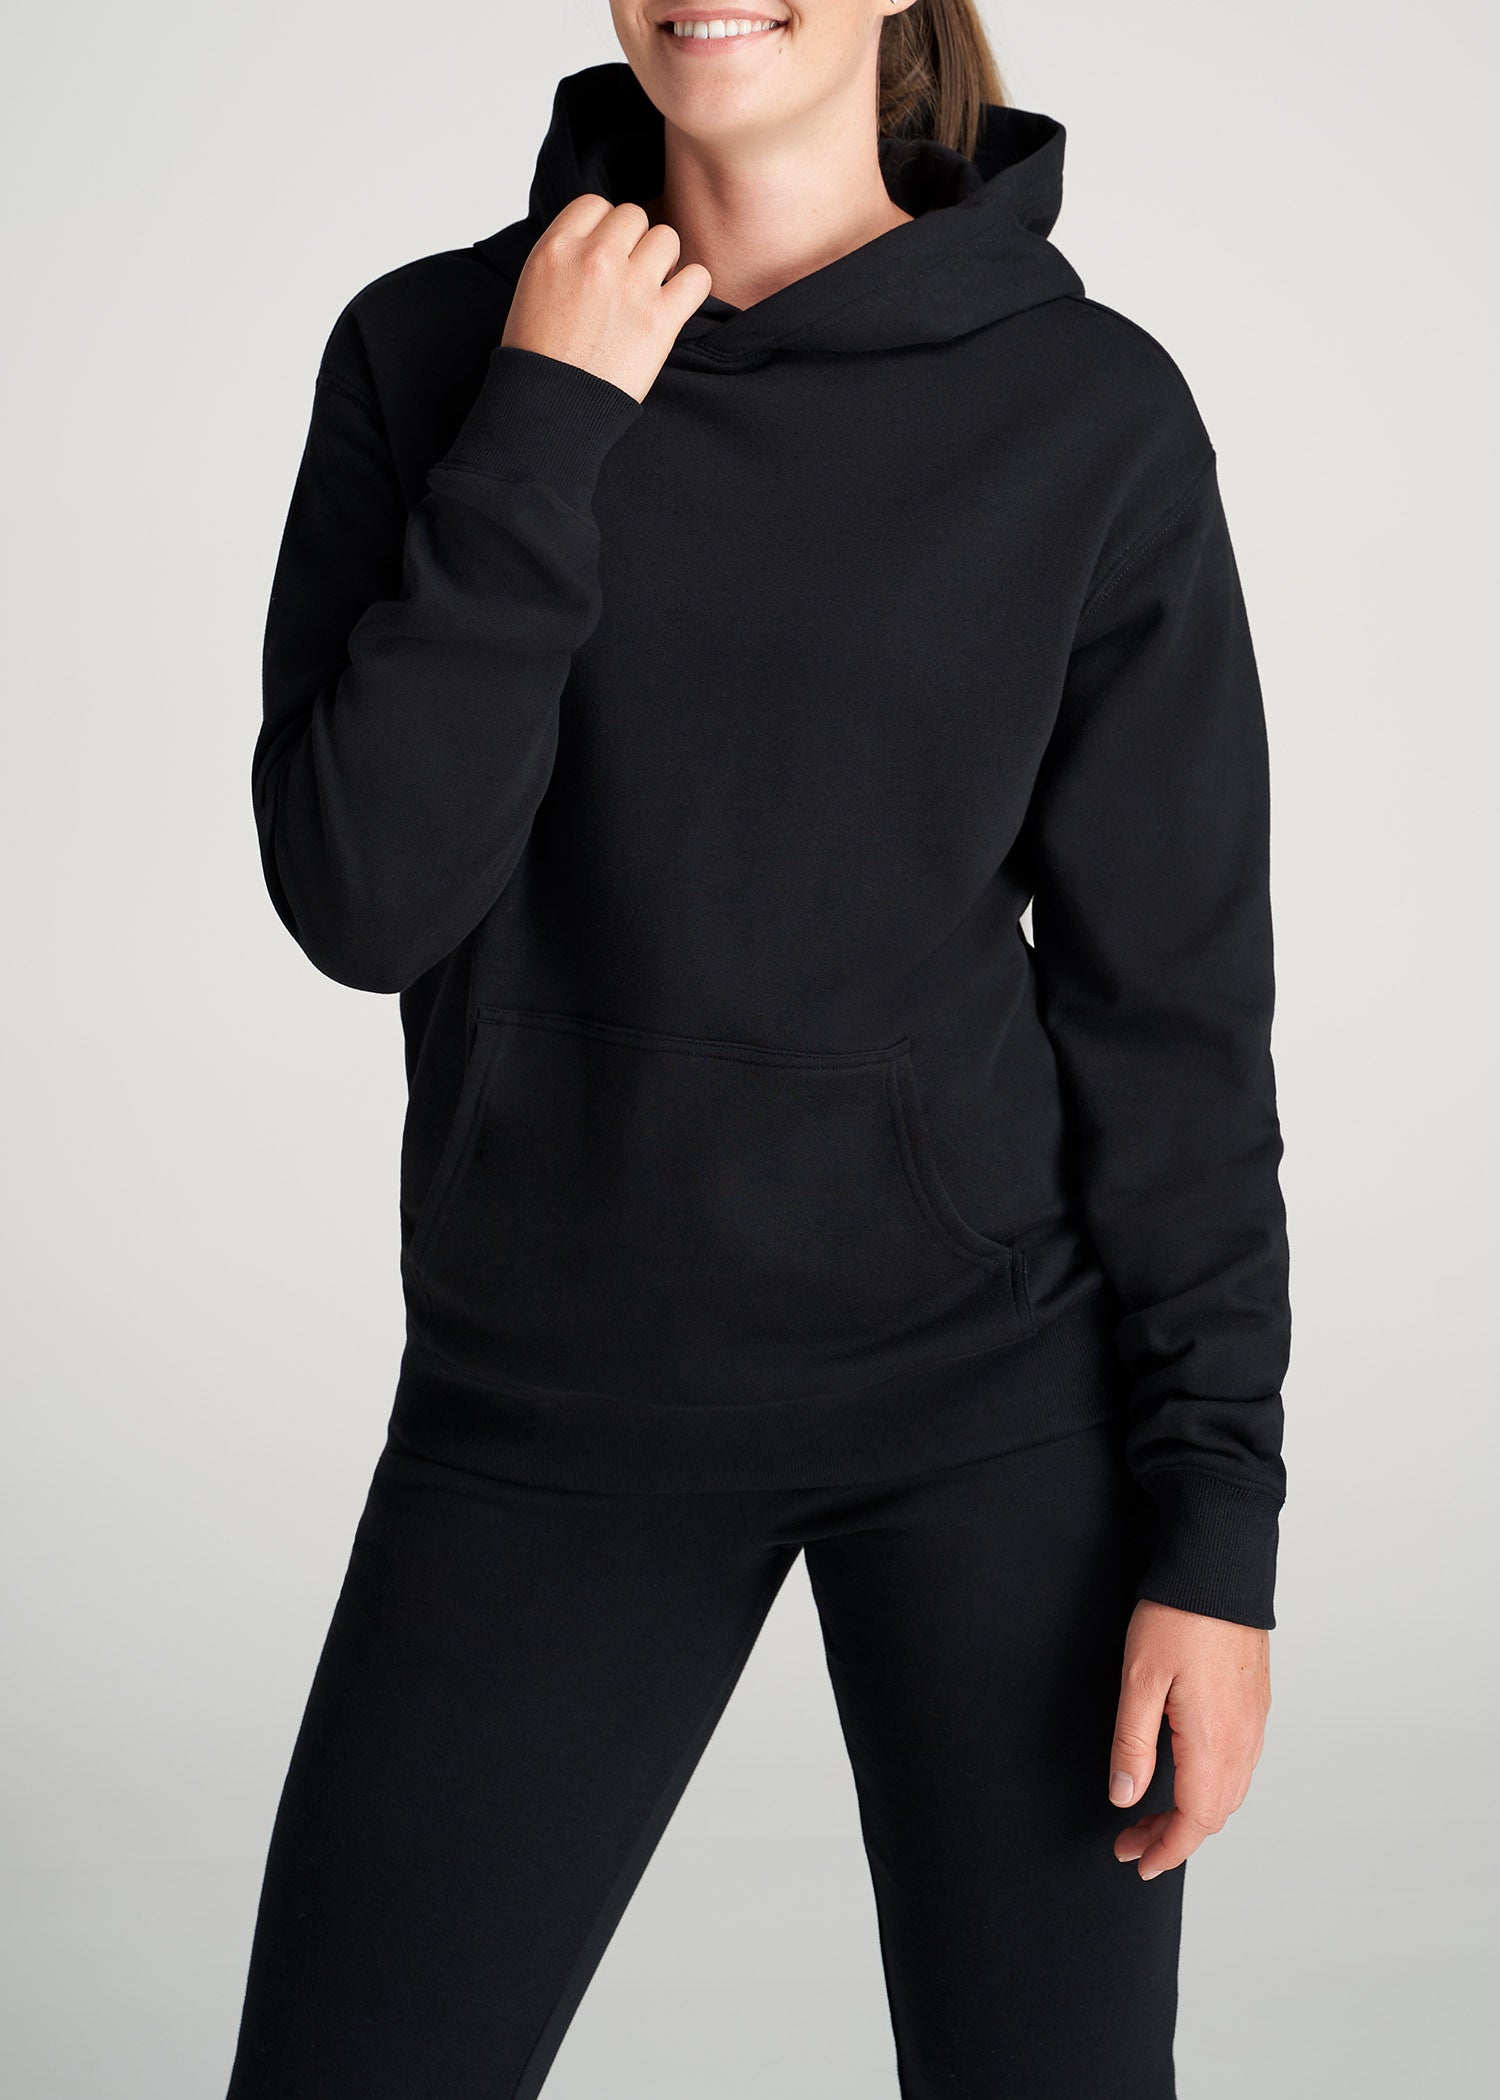 lululemon, Scuba Funnel Neck Cotton-blend Sweatshirt, Black, XS/S,M/L,L/ XL